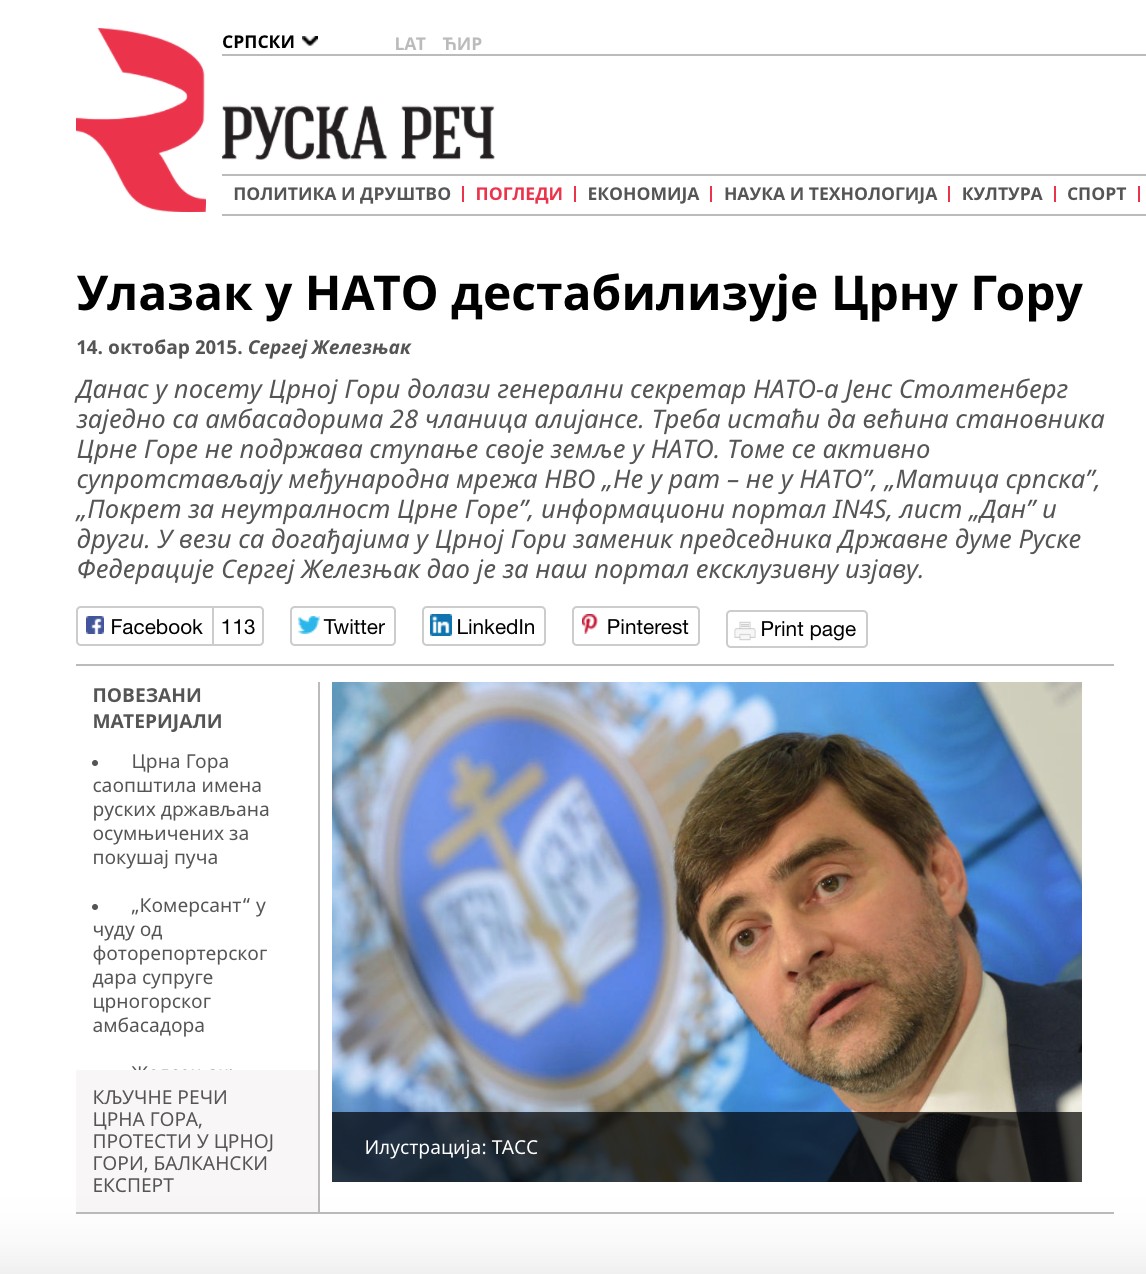 NATO_destabilizuje_CG